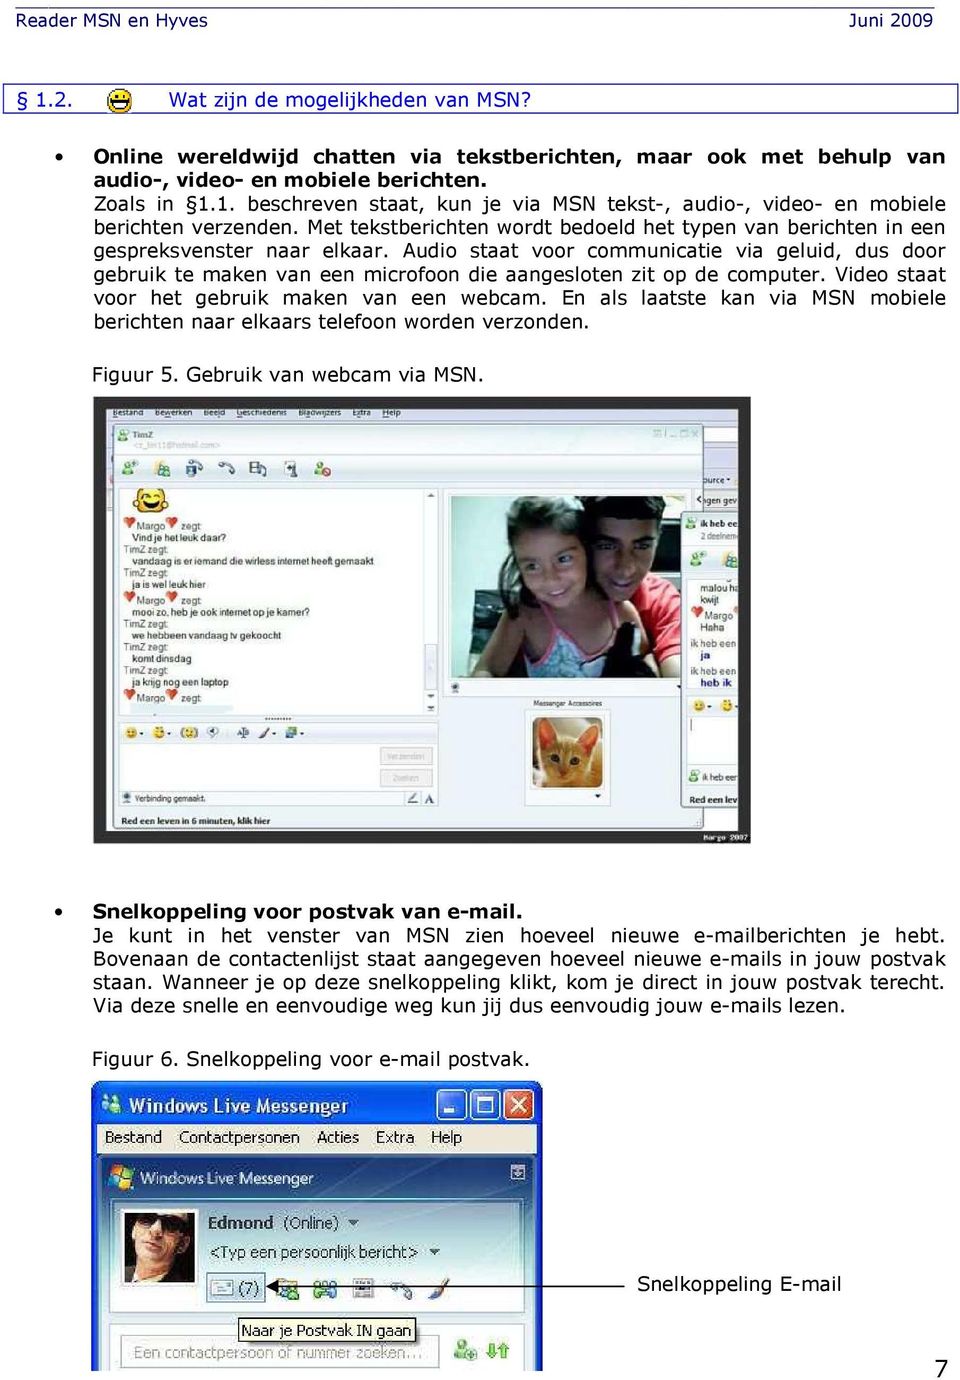 Vide staat vr het gebruik maken van een webcam. En als laatste kan via MSN mbiele berichten naar elkaars telefn wrden verznden. Figuur 5. Gebruik van webcam via MSN. Snelkppeling vr pstvak van e-mail.